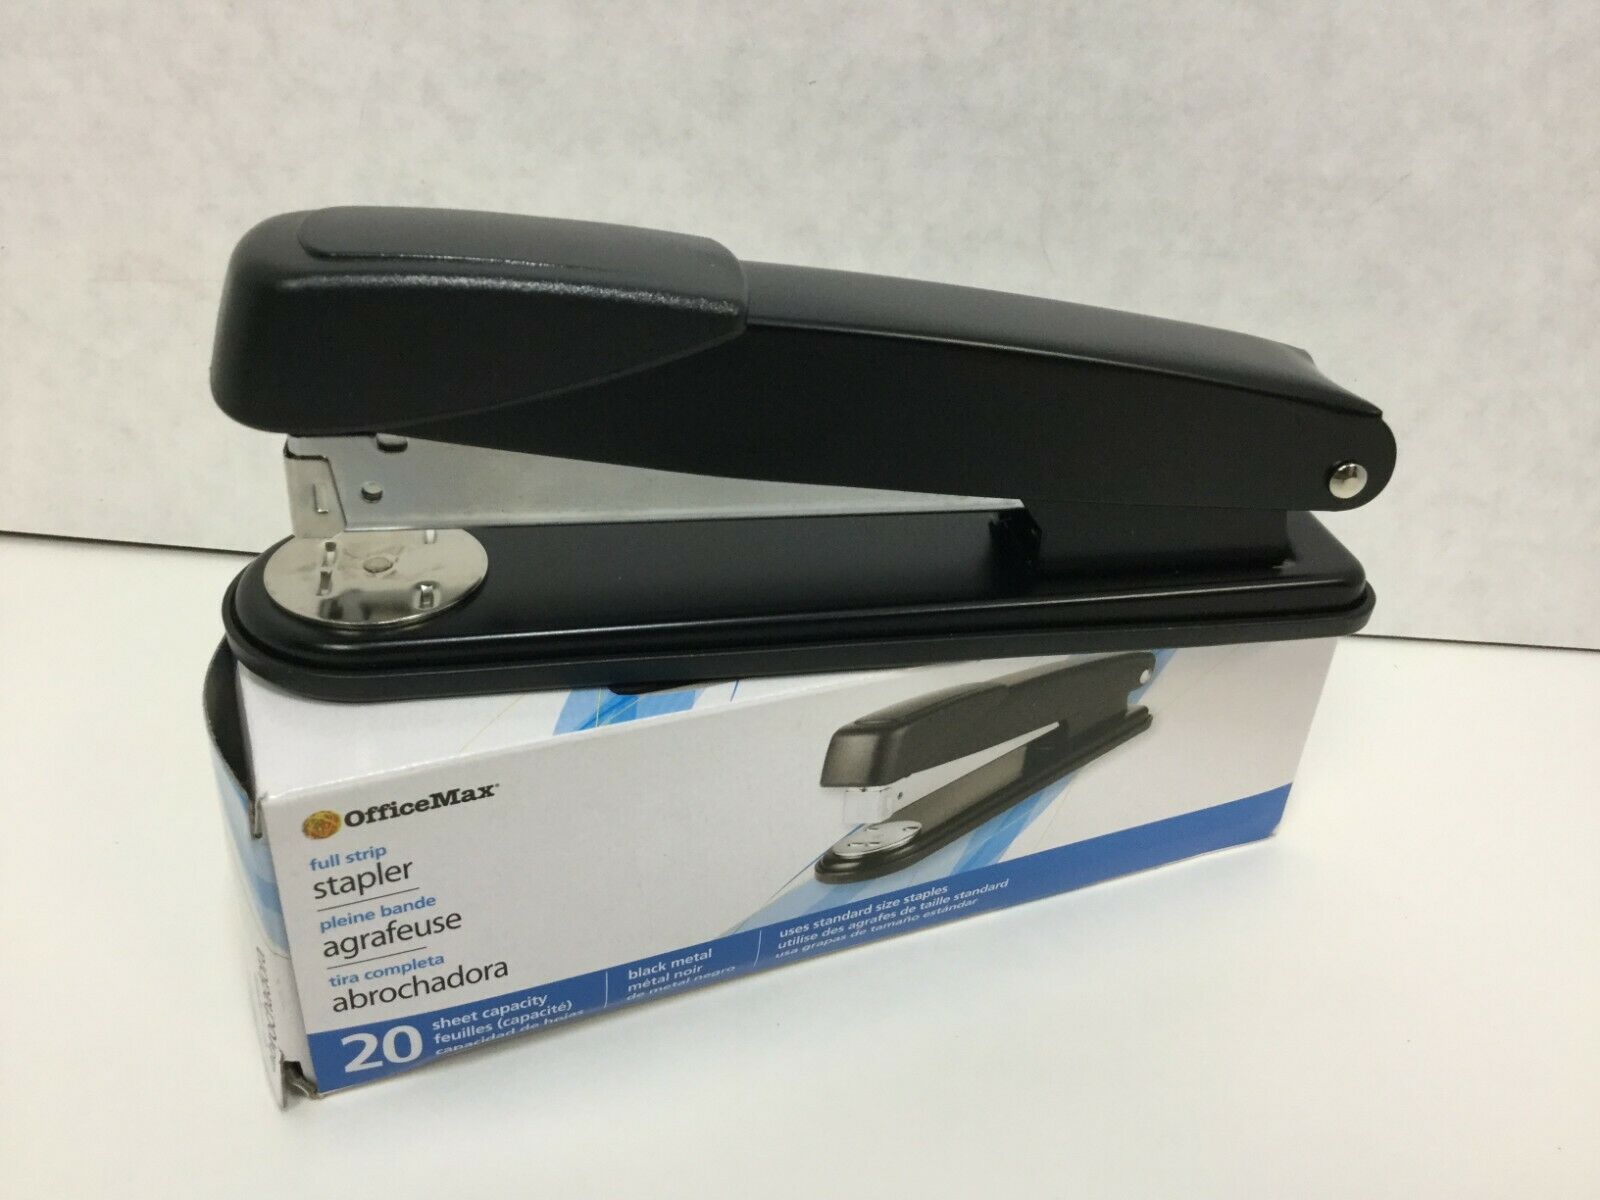 Officemax Full Strip Stapler, Standard Stapler, 20 Sheet Capacity, Black Metal